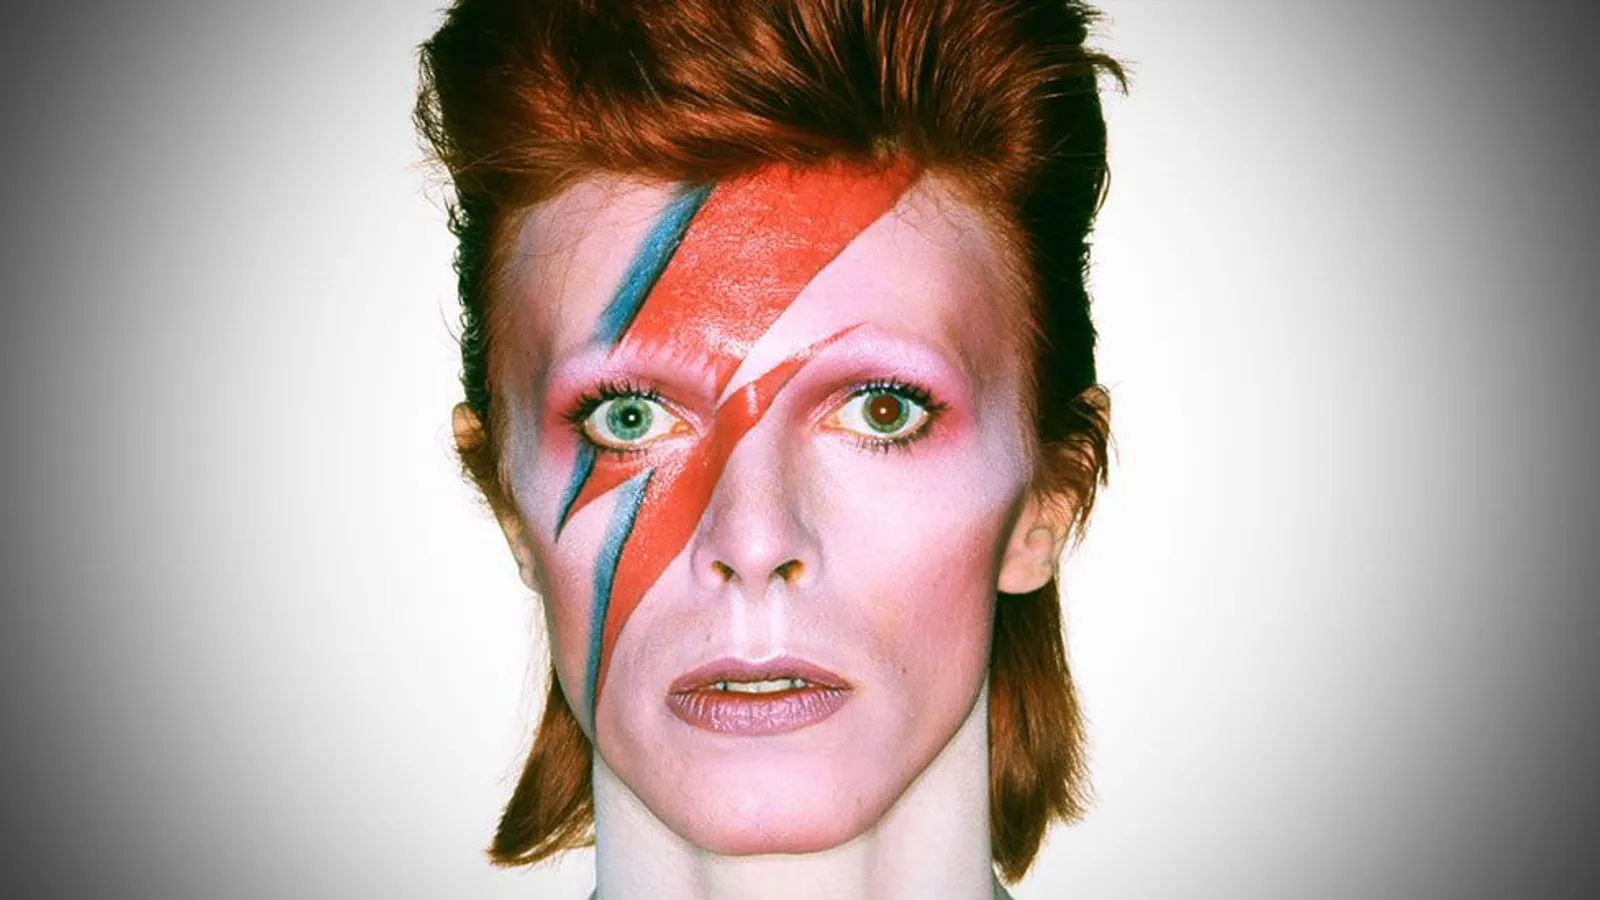 David Bowie death date: When did David Bowie die? - ABTC